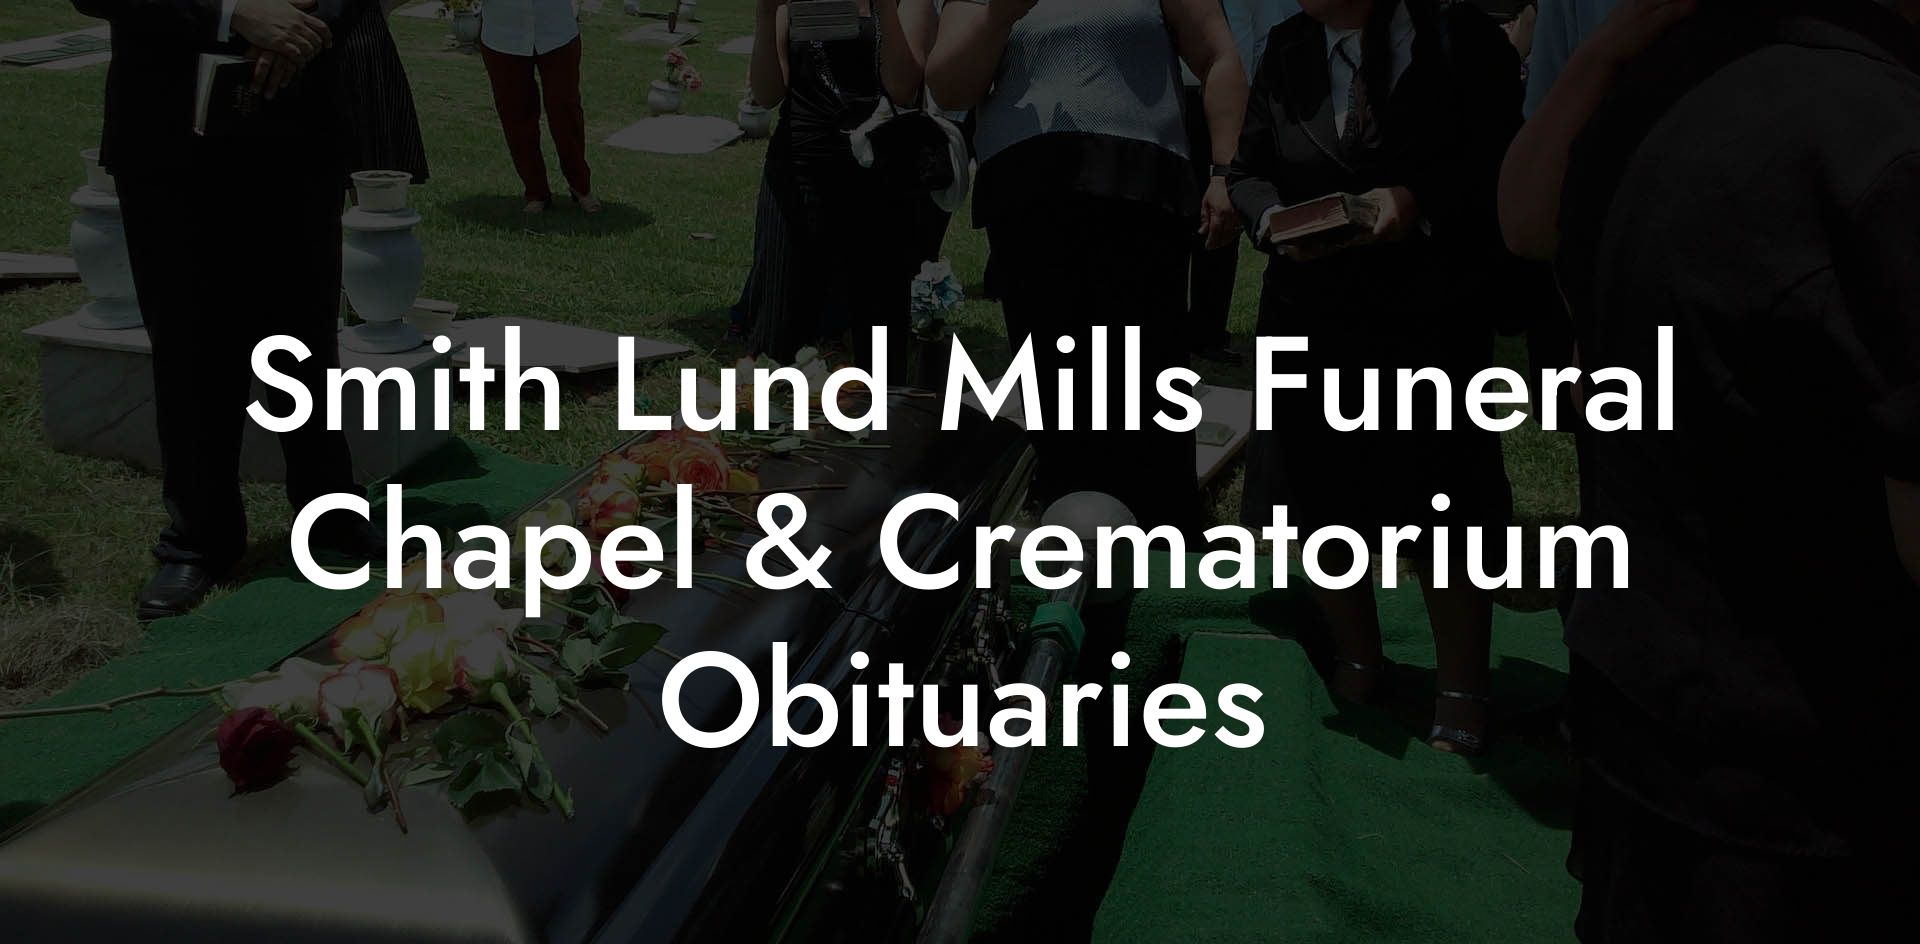 Smith Lund Mills Funeral Chapel & Crematorium Obituaries